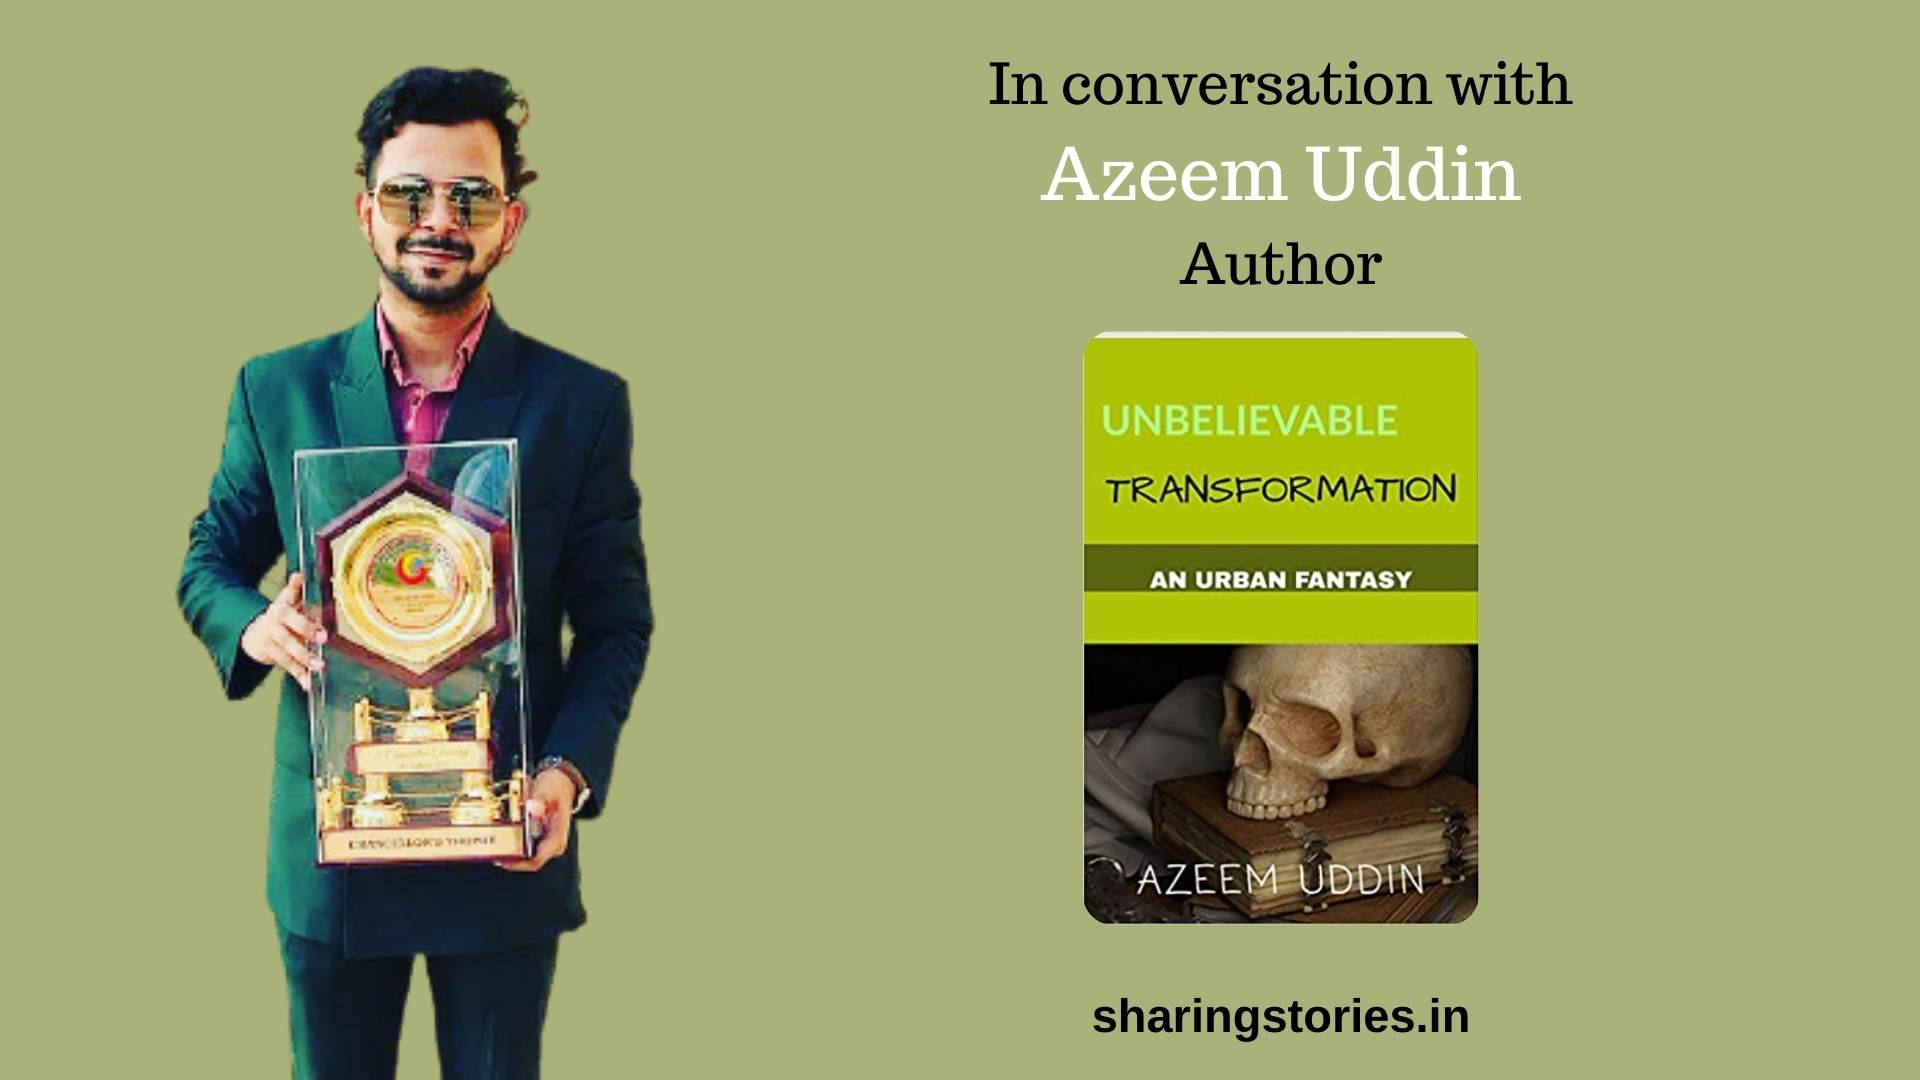 Author Azeem Uddin